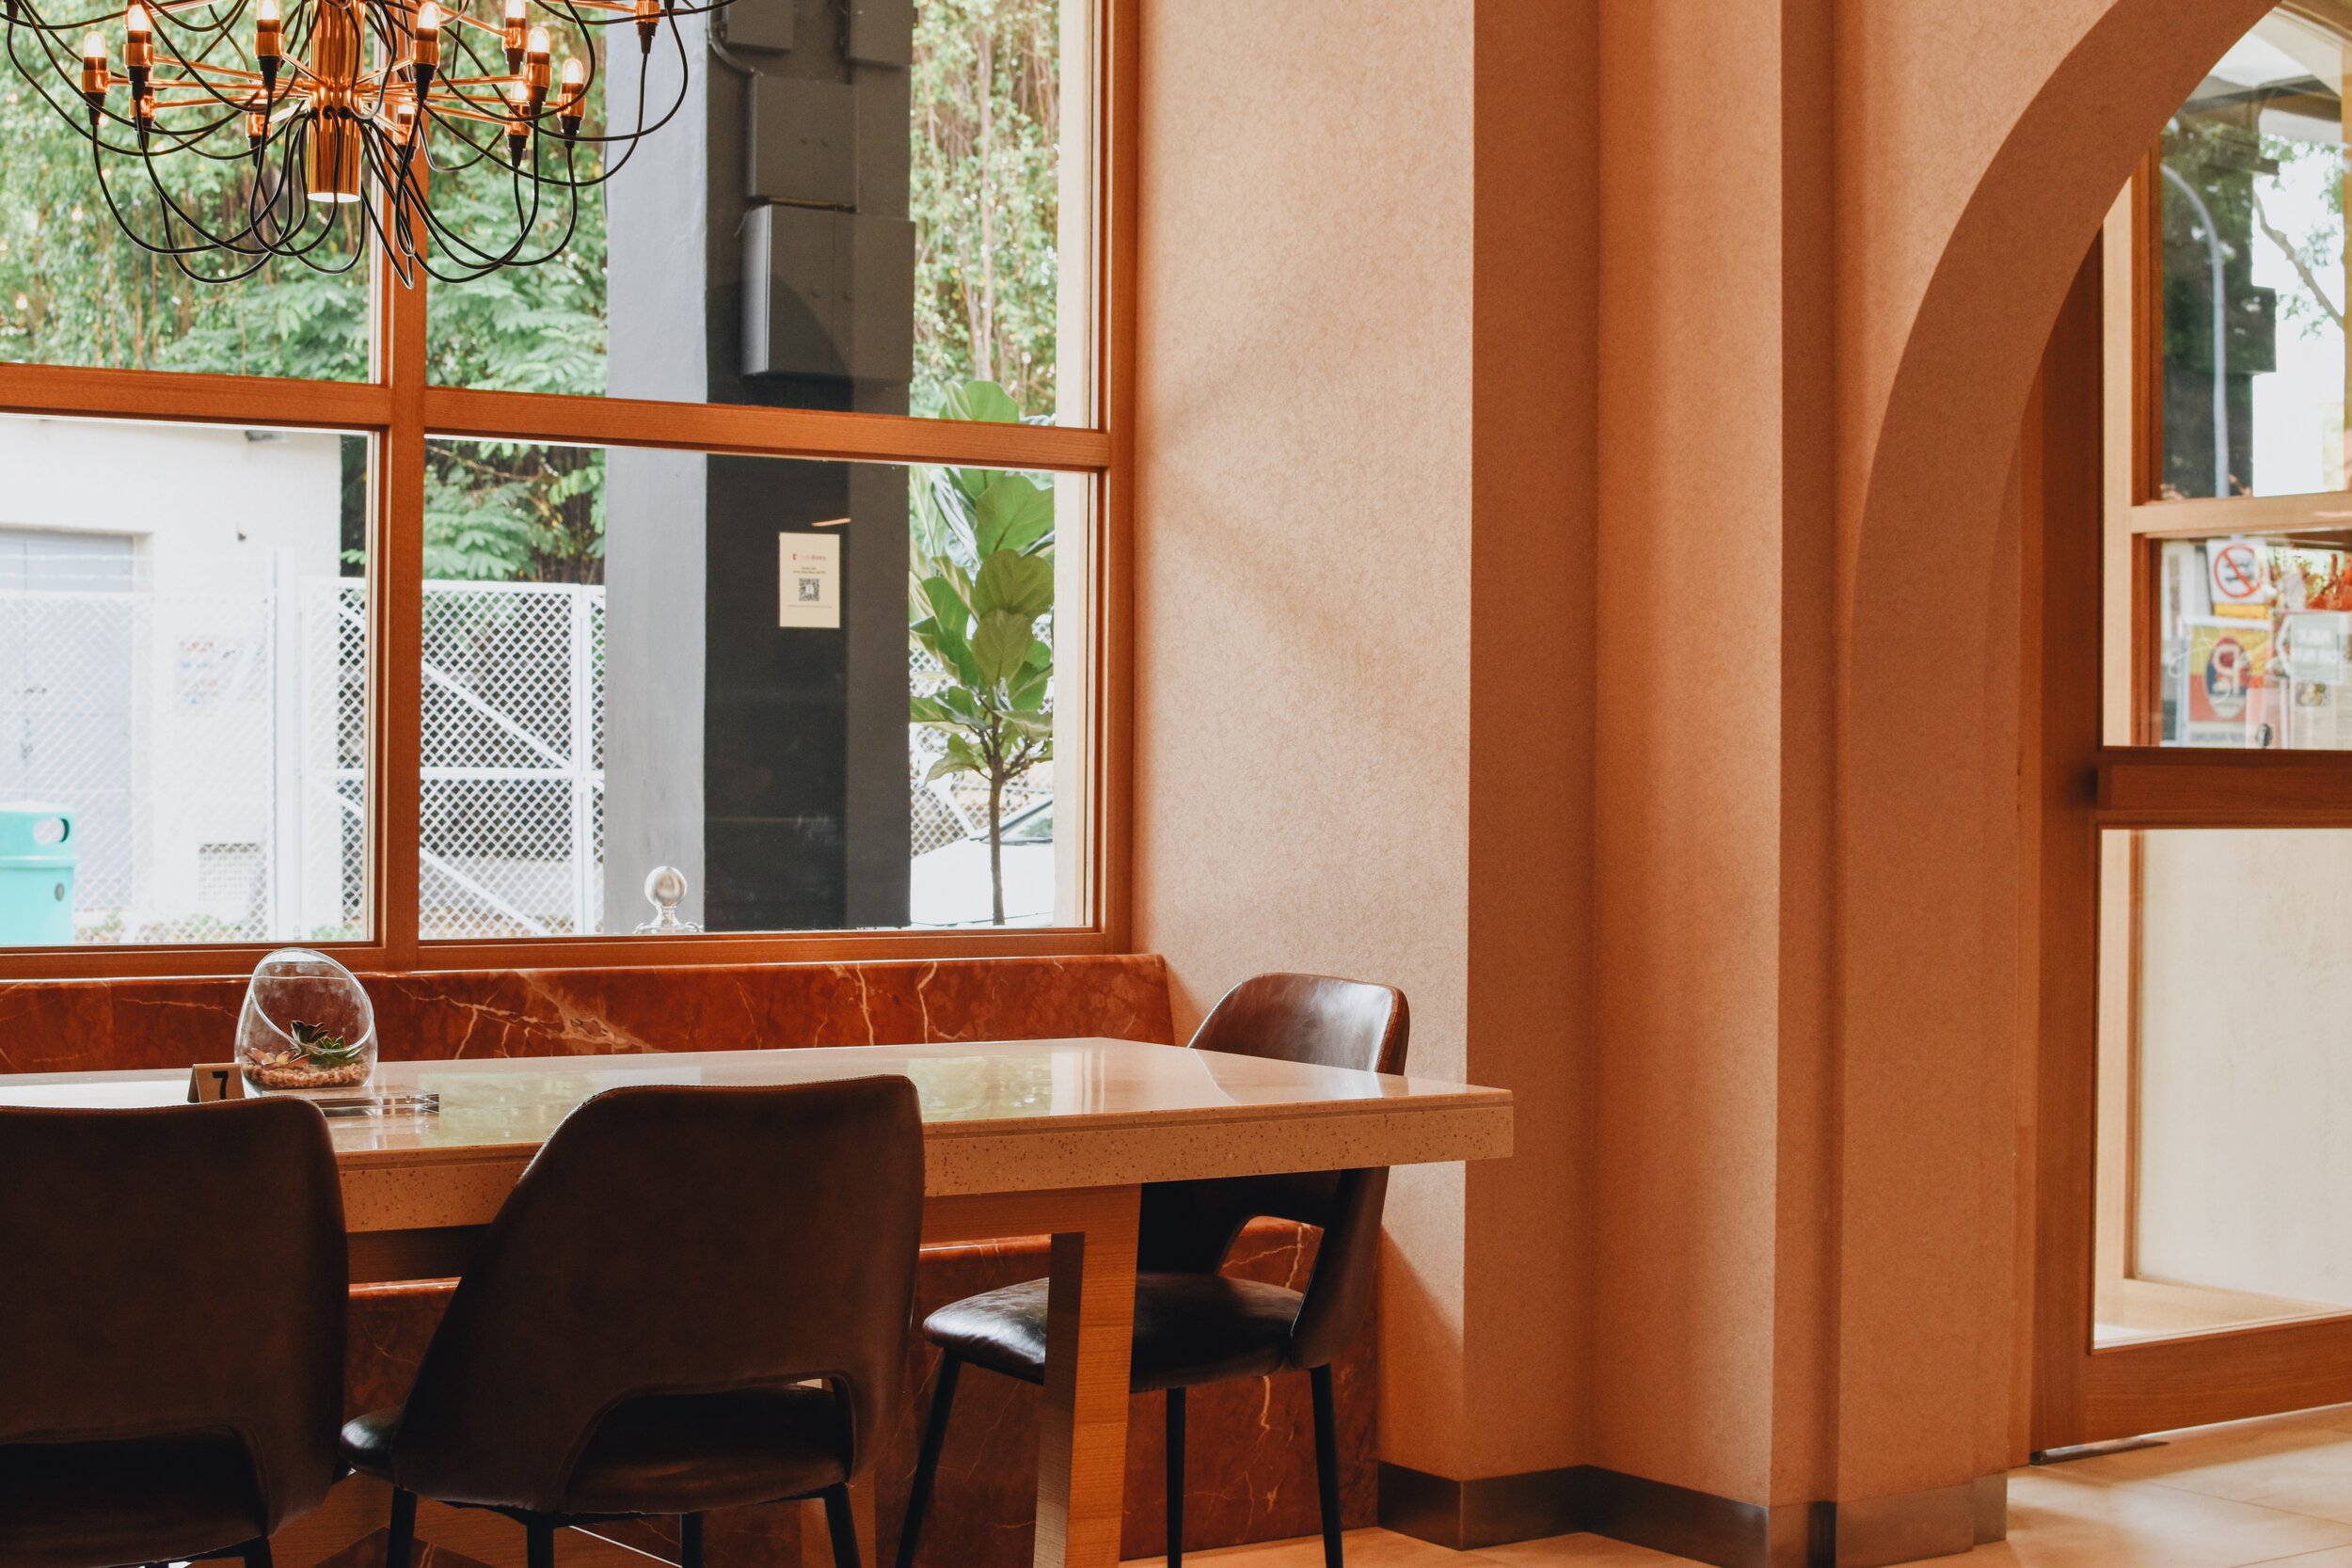 Sevens Cafe: Glossy New Brunch Cafe at Joo Chiat — Blake Erik.